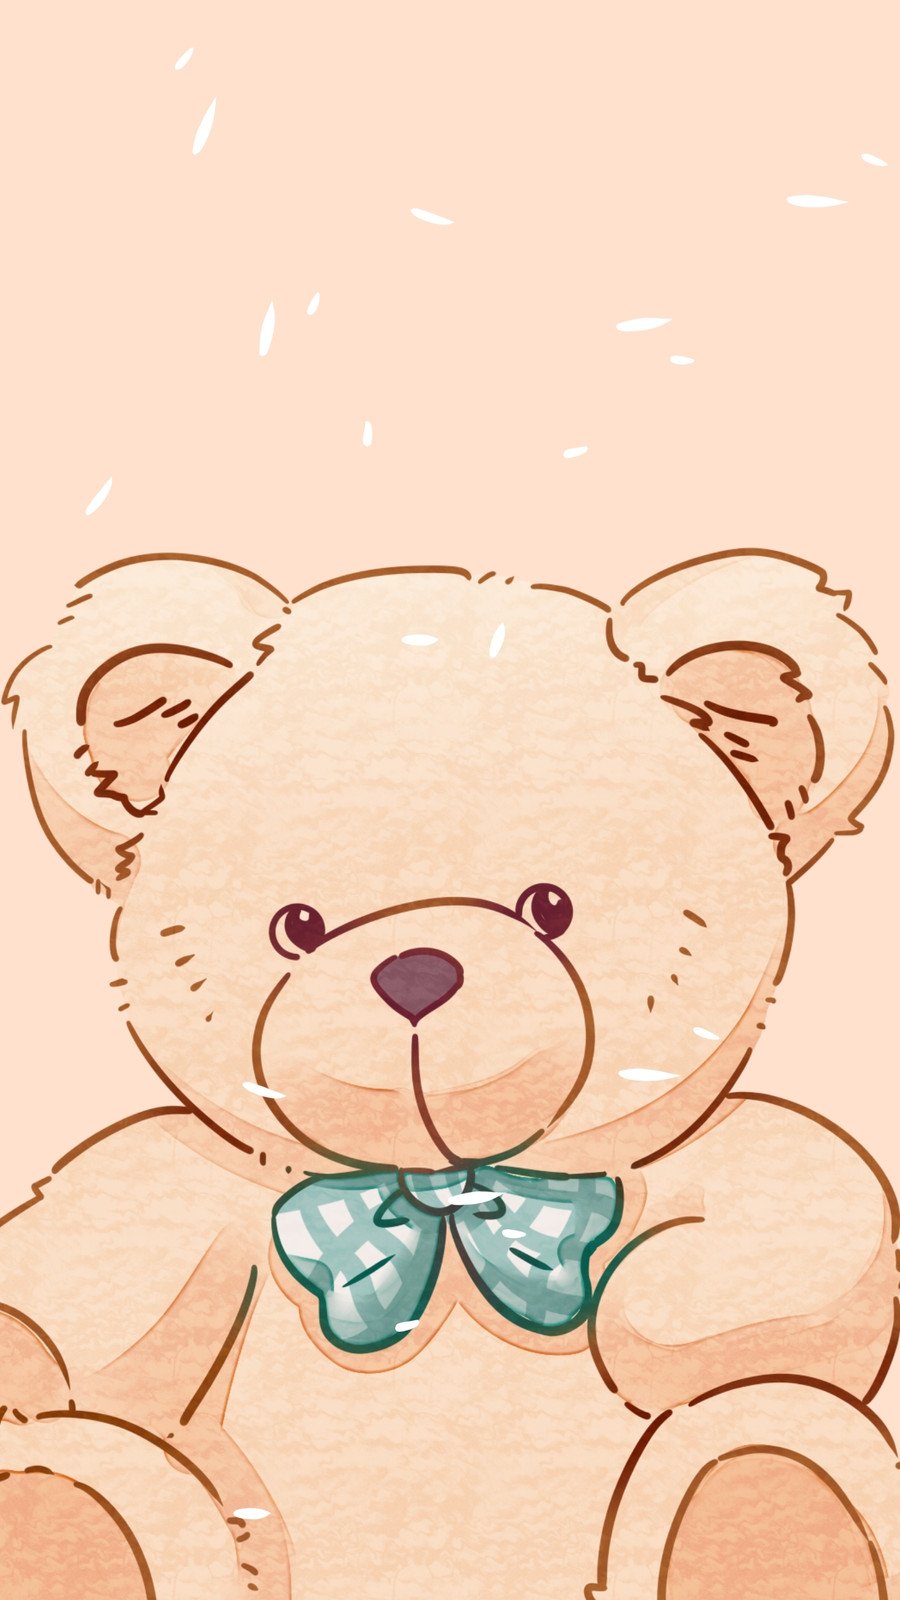 42% OFF on Tabby Very Cute Teddy Bear - 16 inch on Flipkart | PaisaWapas.com